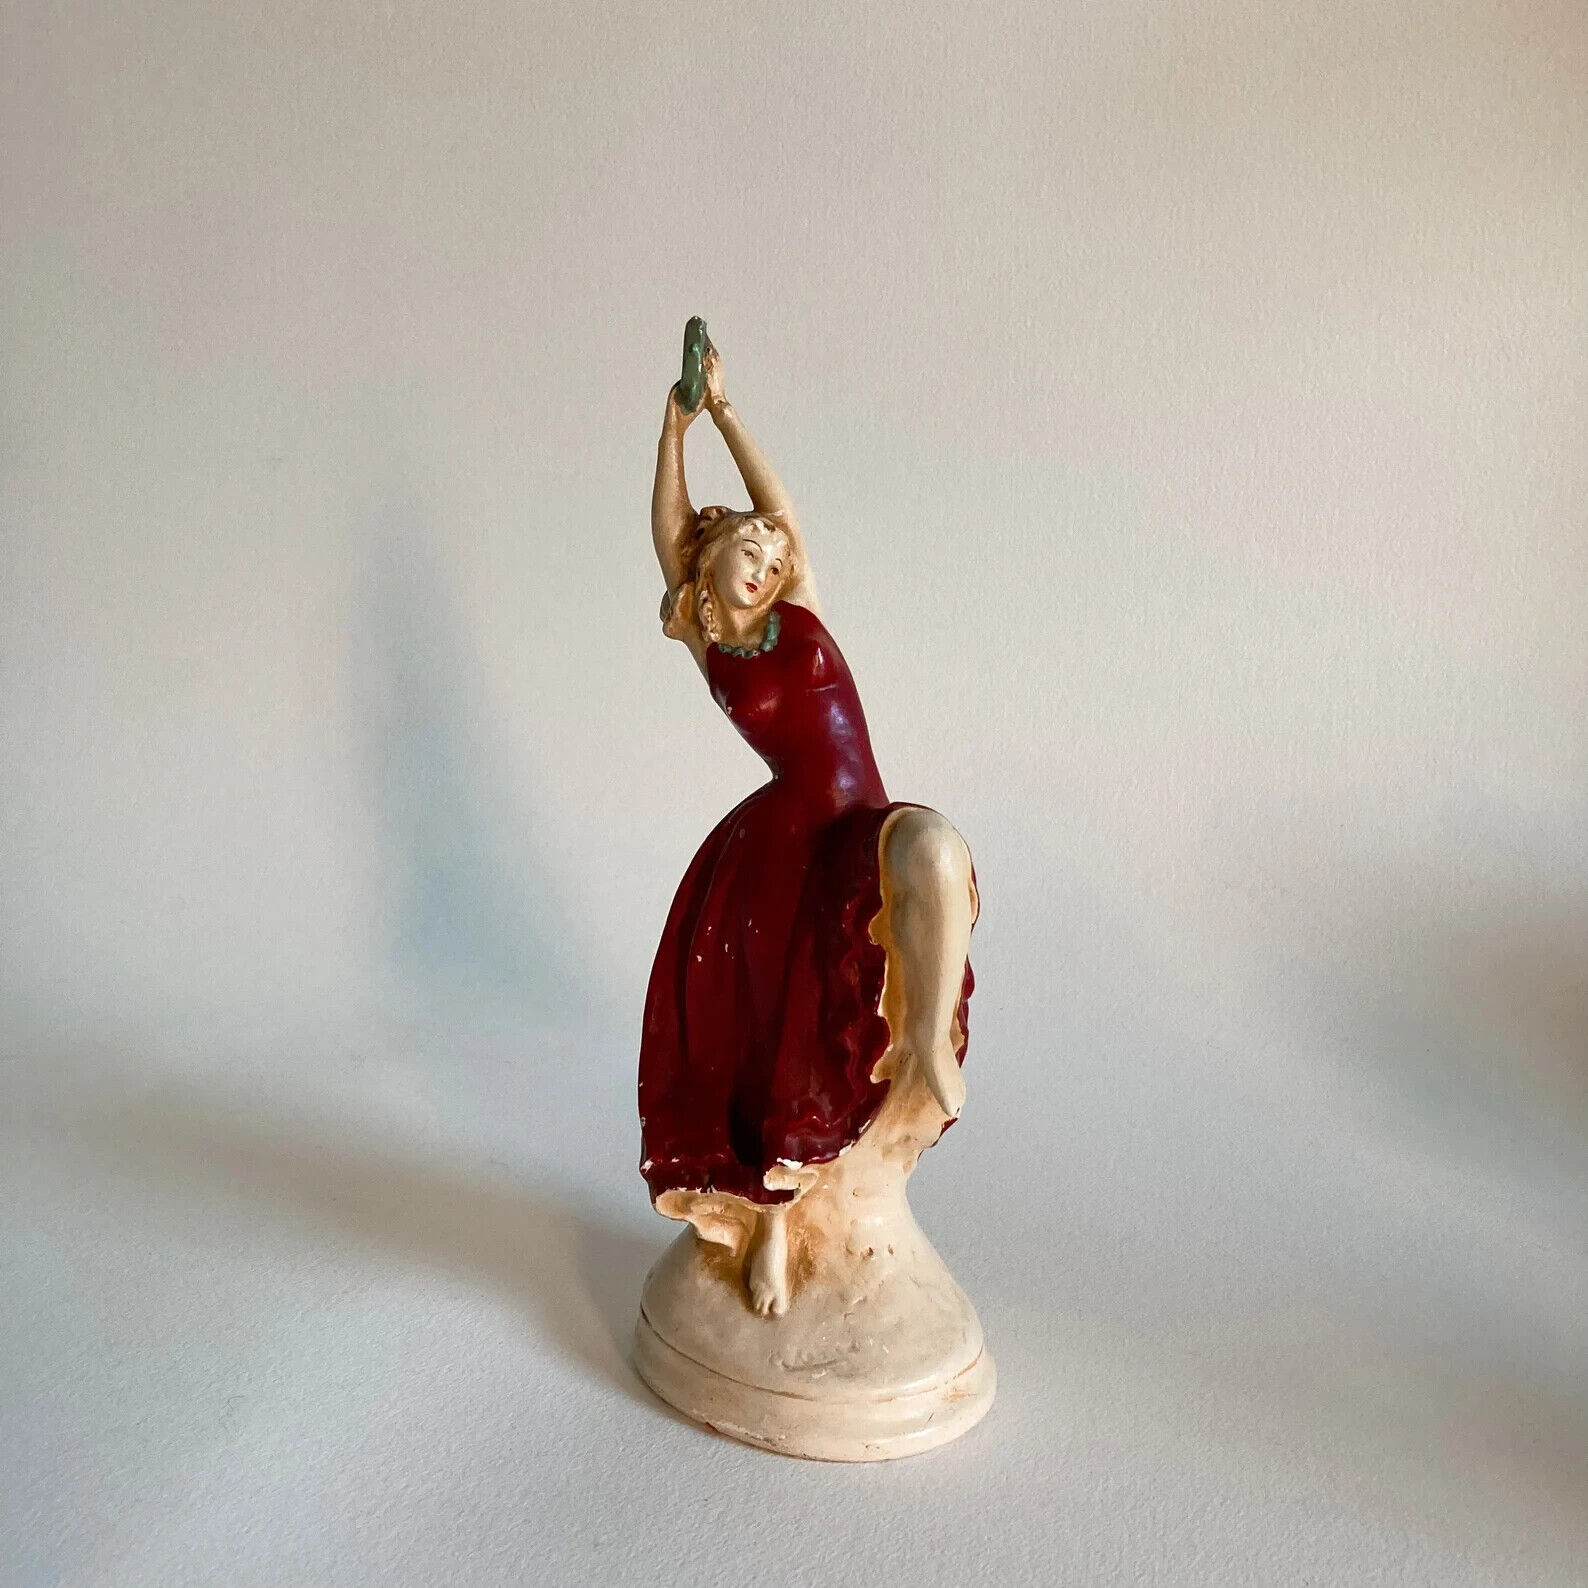 1930s Dancing Woman Ceramic Statue, New Art Wares Statue, Art Deco Dancing Woman